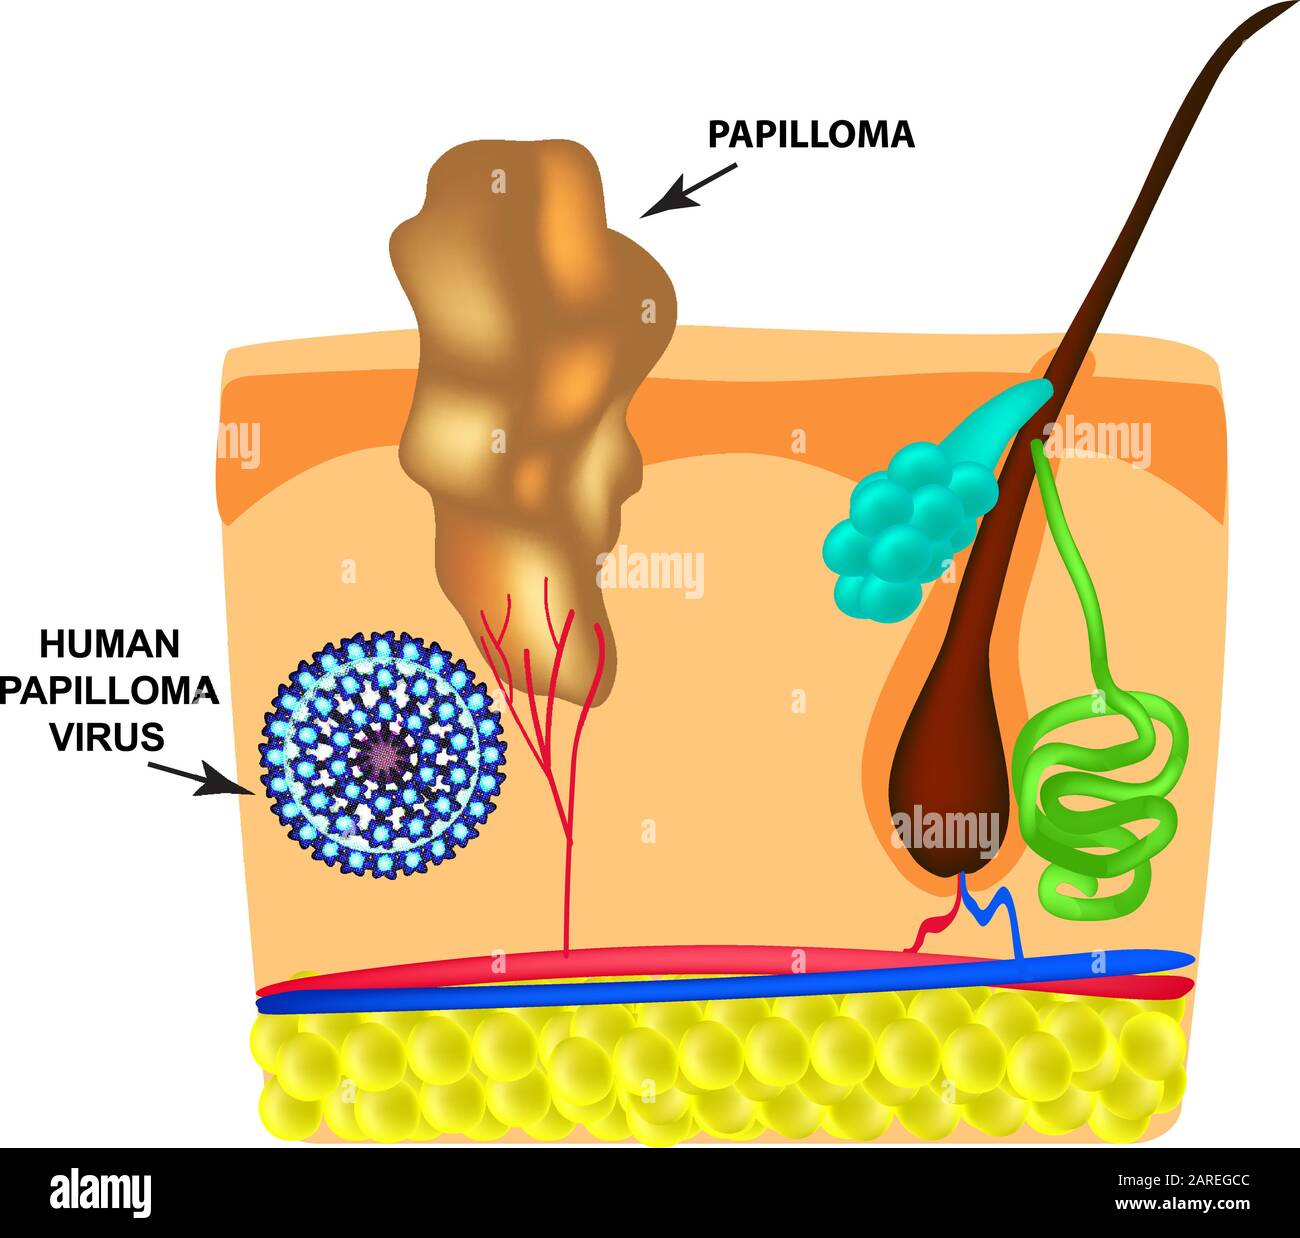 Das humane Papilloma-Virus verursacht die Bildung von Papillomen auf der Haut. Struktur. Infografiken. Vektordarstellung auf isoliertem Hintergrund. Stock Vektor